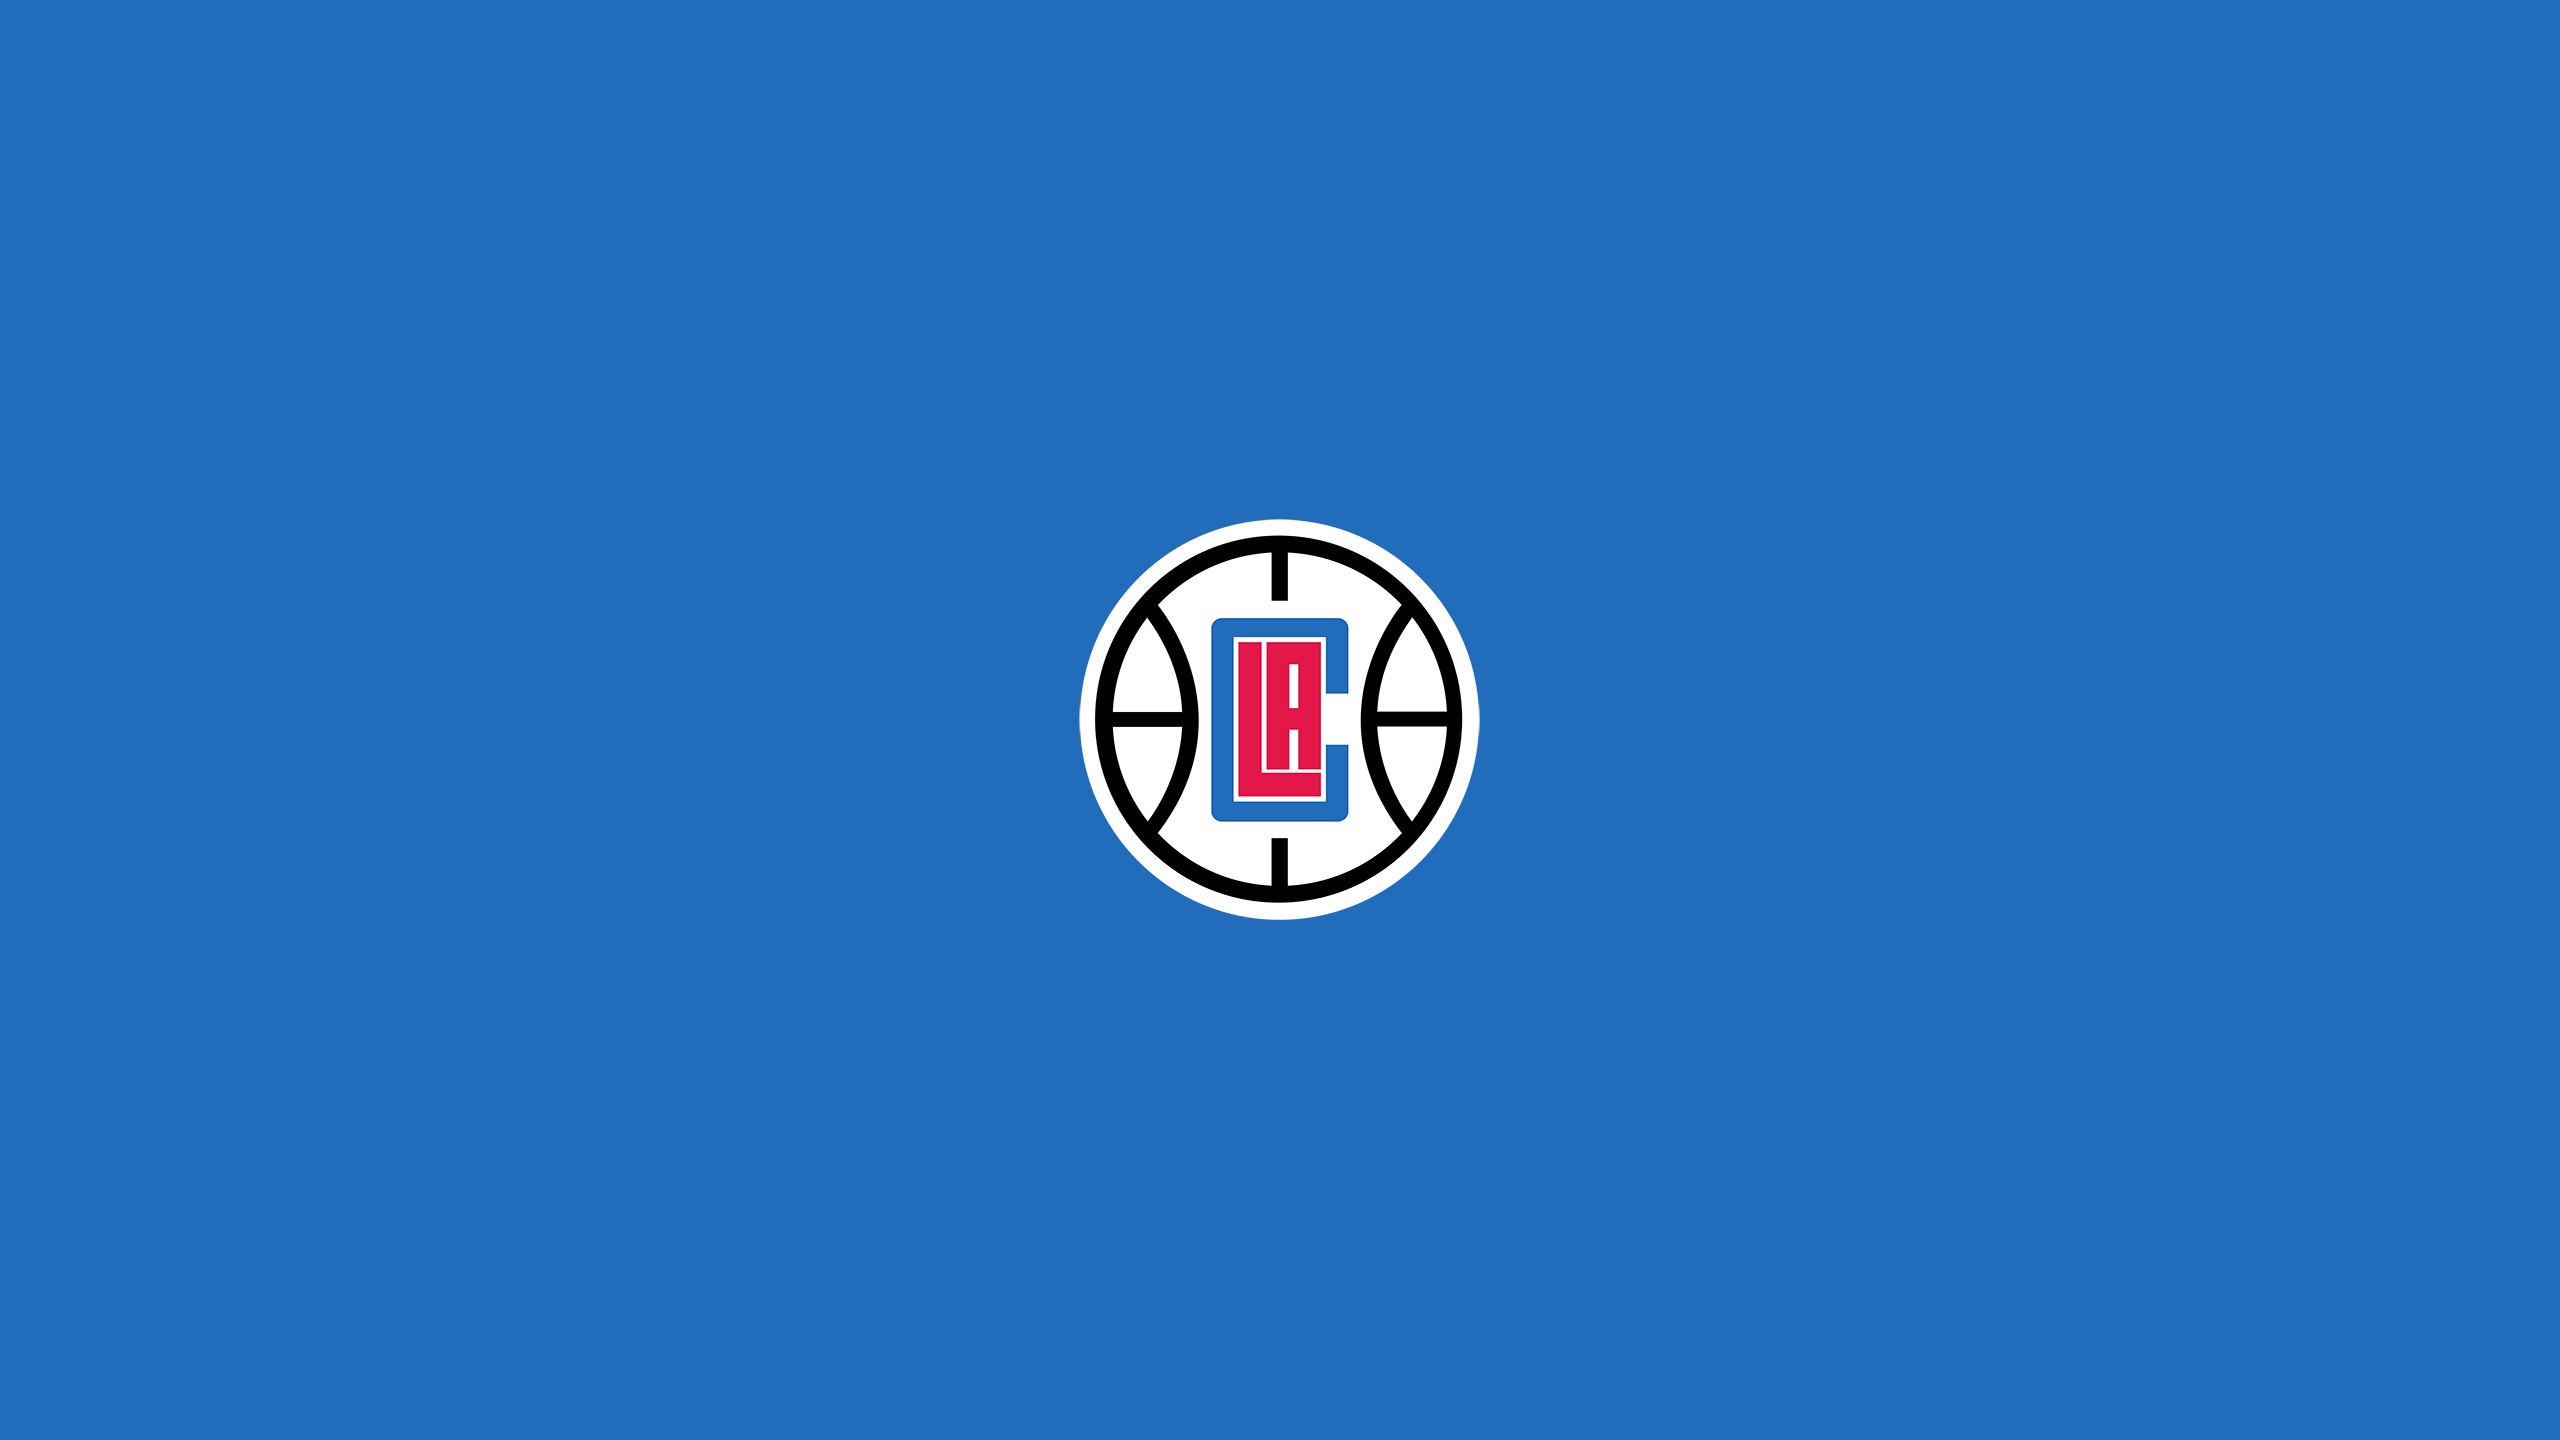 LA Clippers - Square Bettor